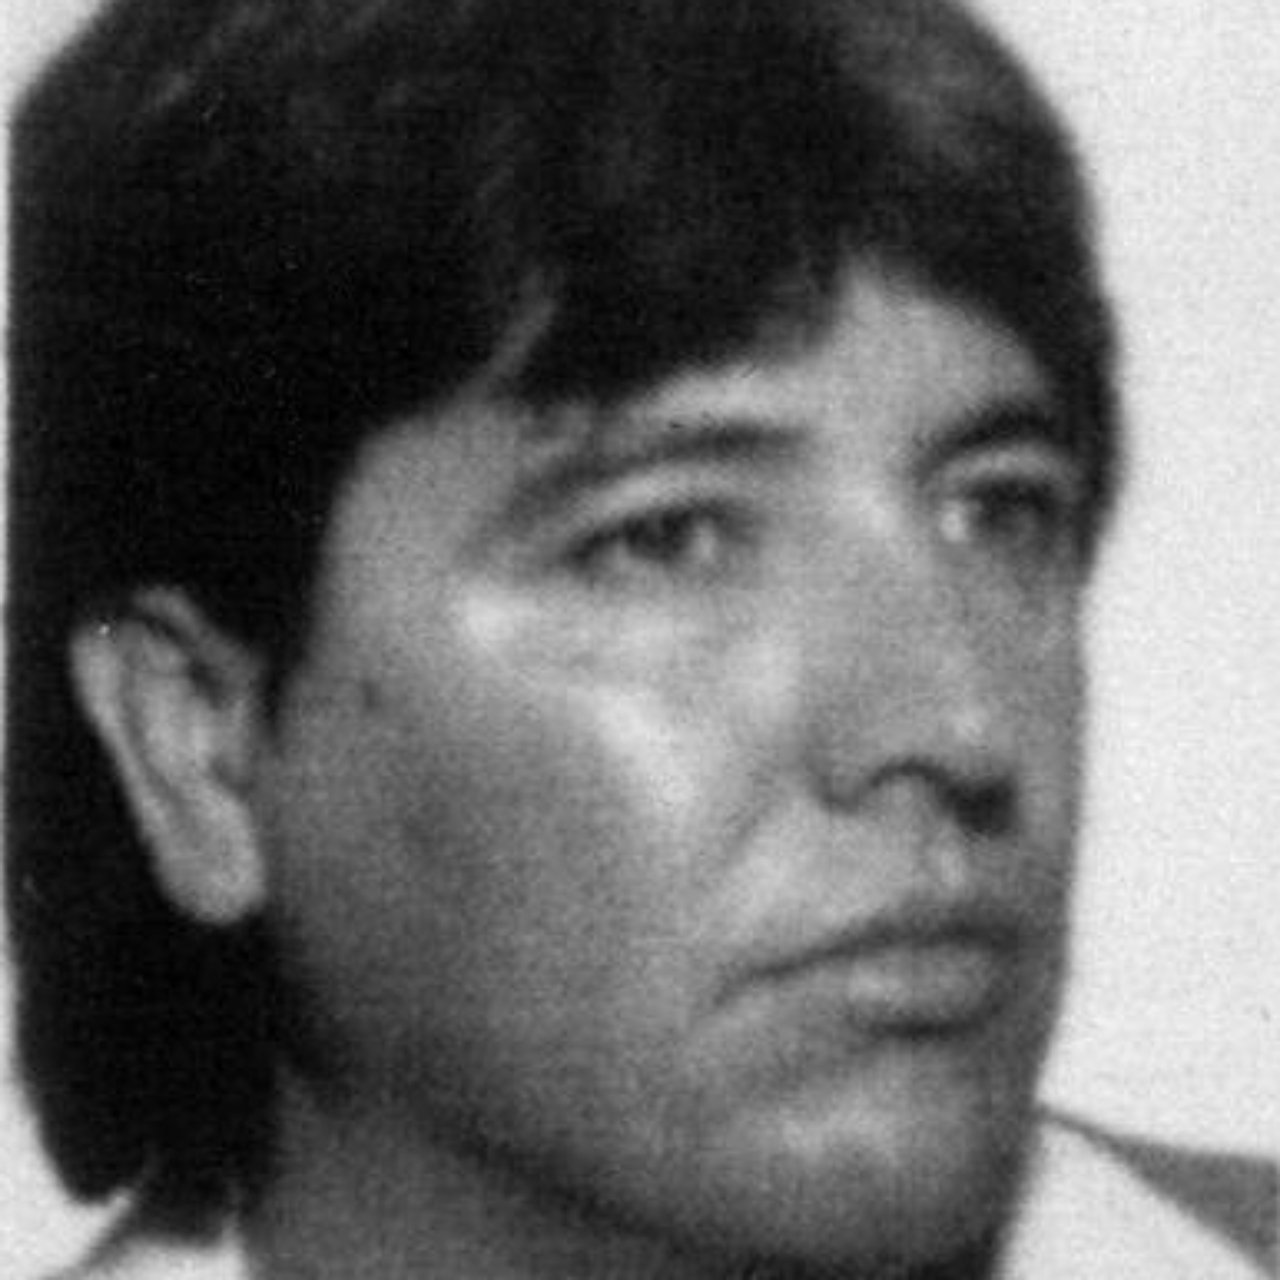 Amado Carrillo Fuentes, narcotraficante mexicano